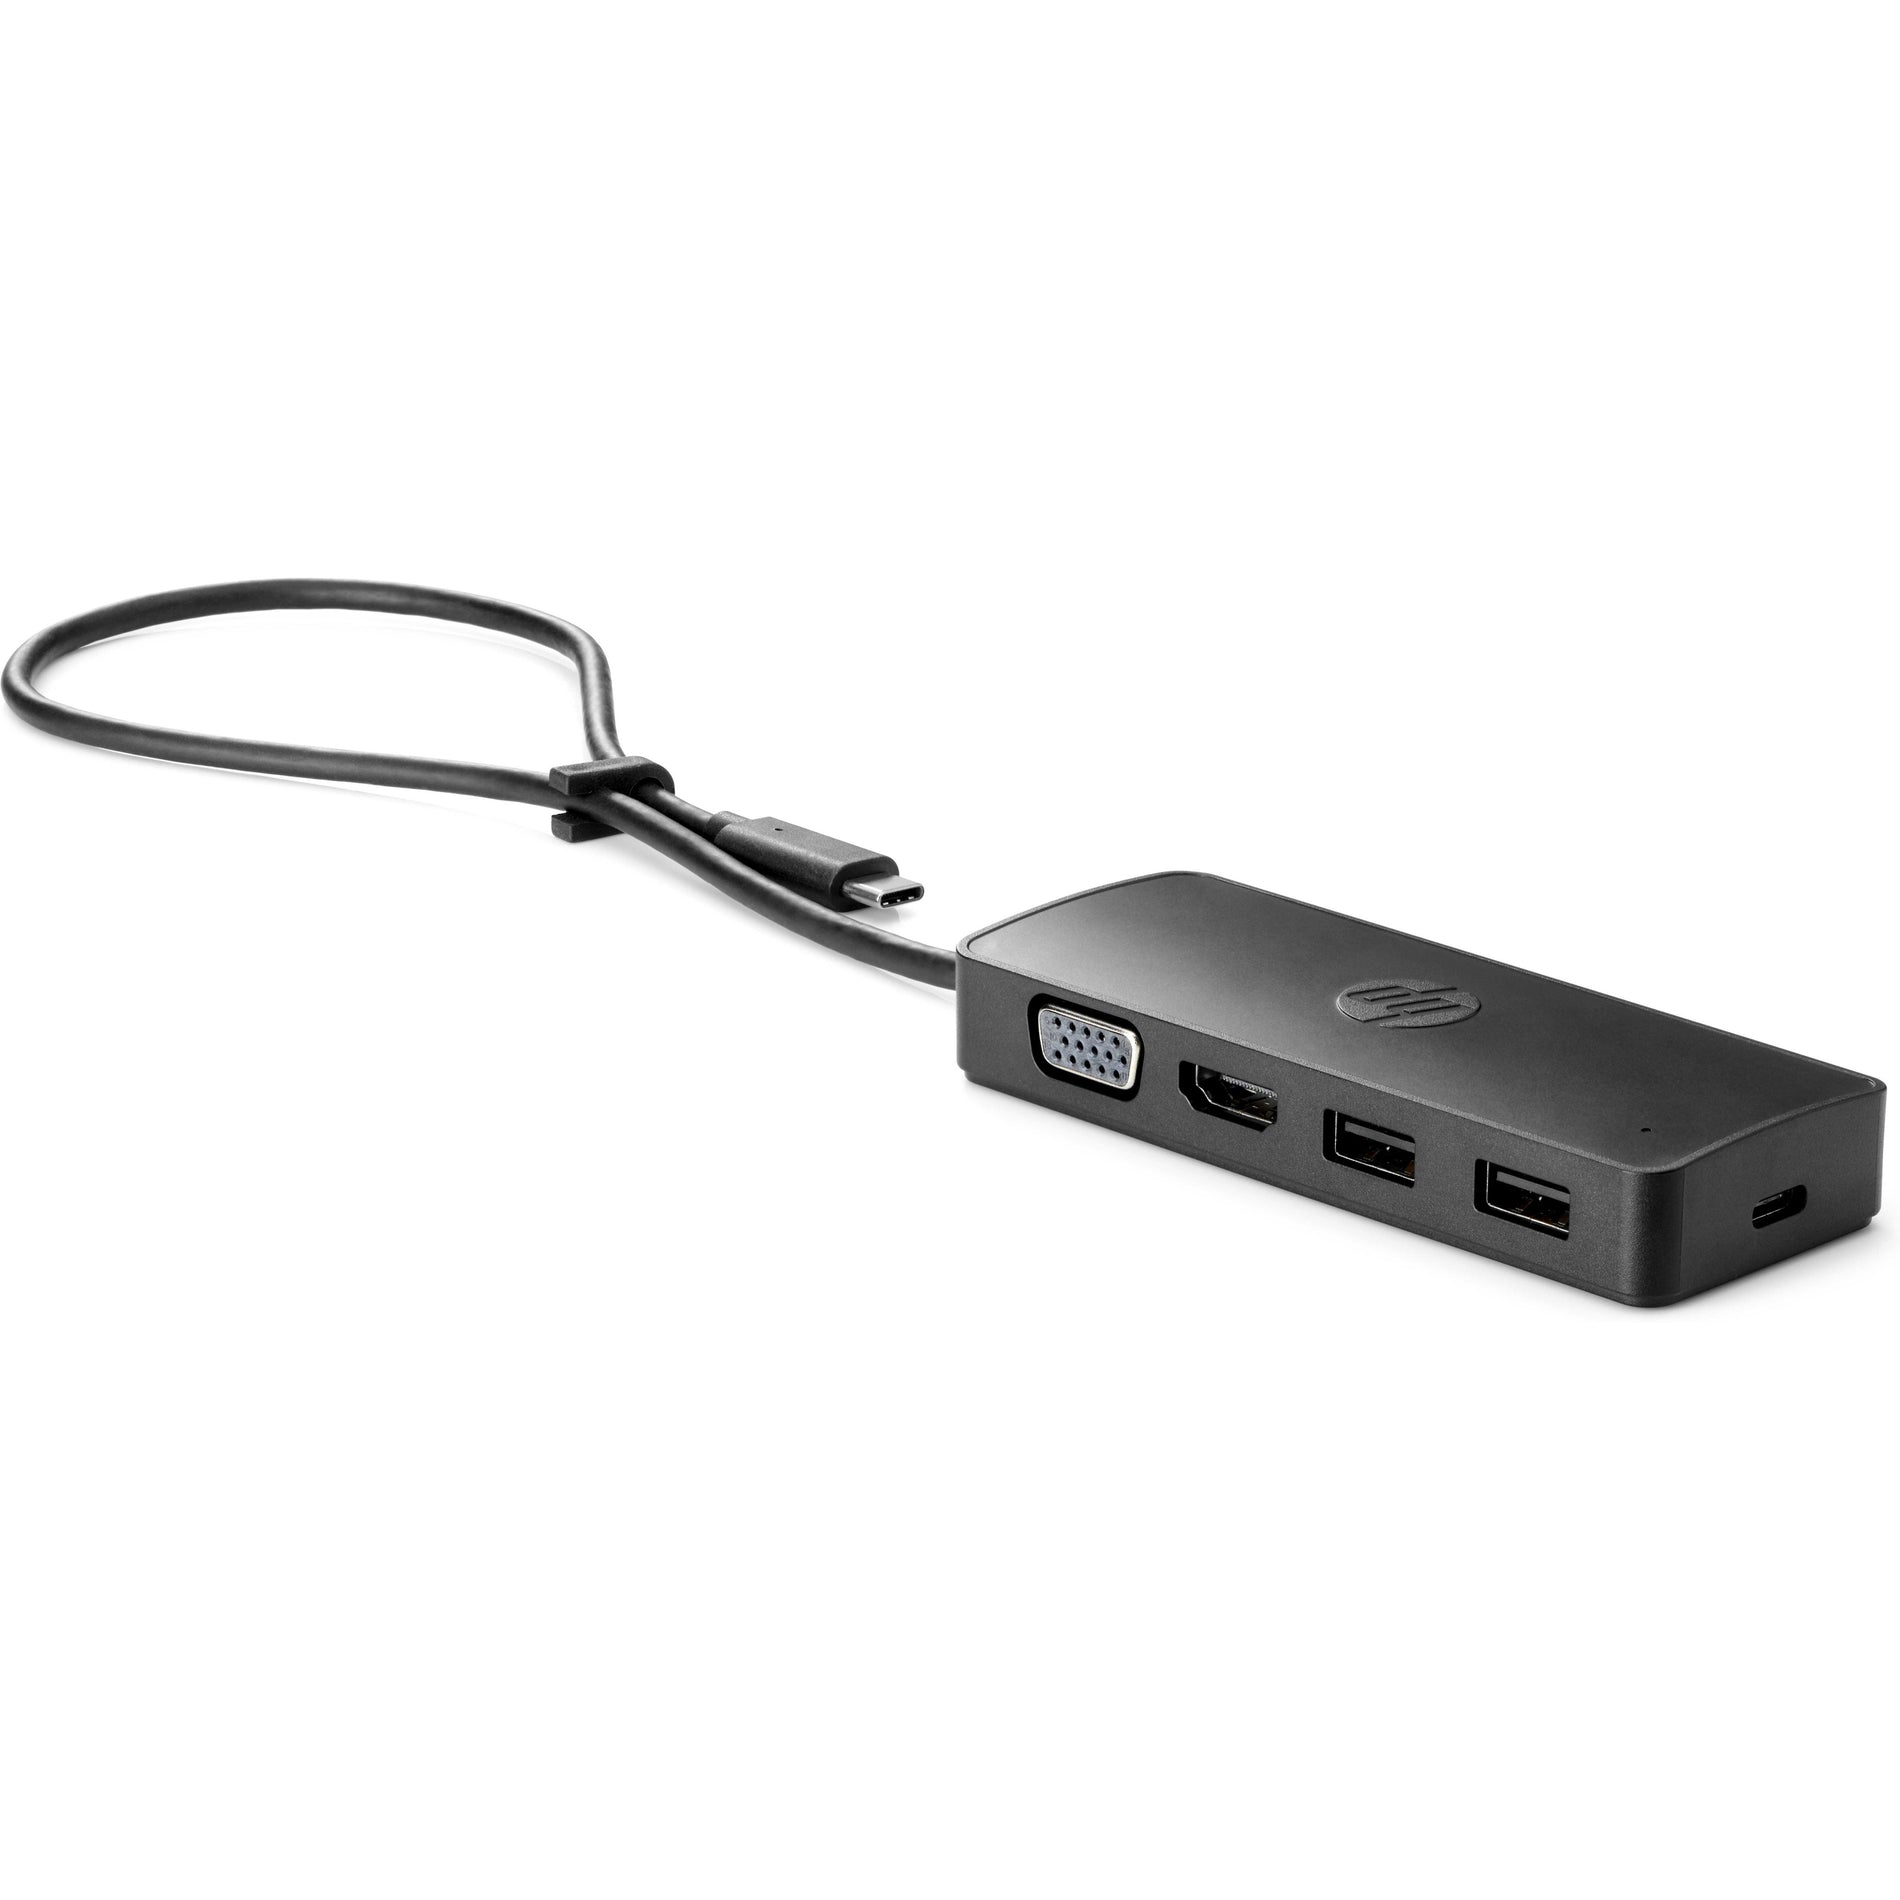 HP 7PJ38UT USB-C Travel Hub G2, VGA, HDMI, USB Type-C, Thunderbolt, Docking Station